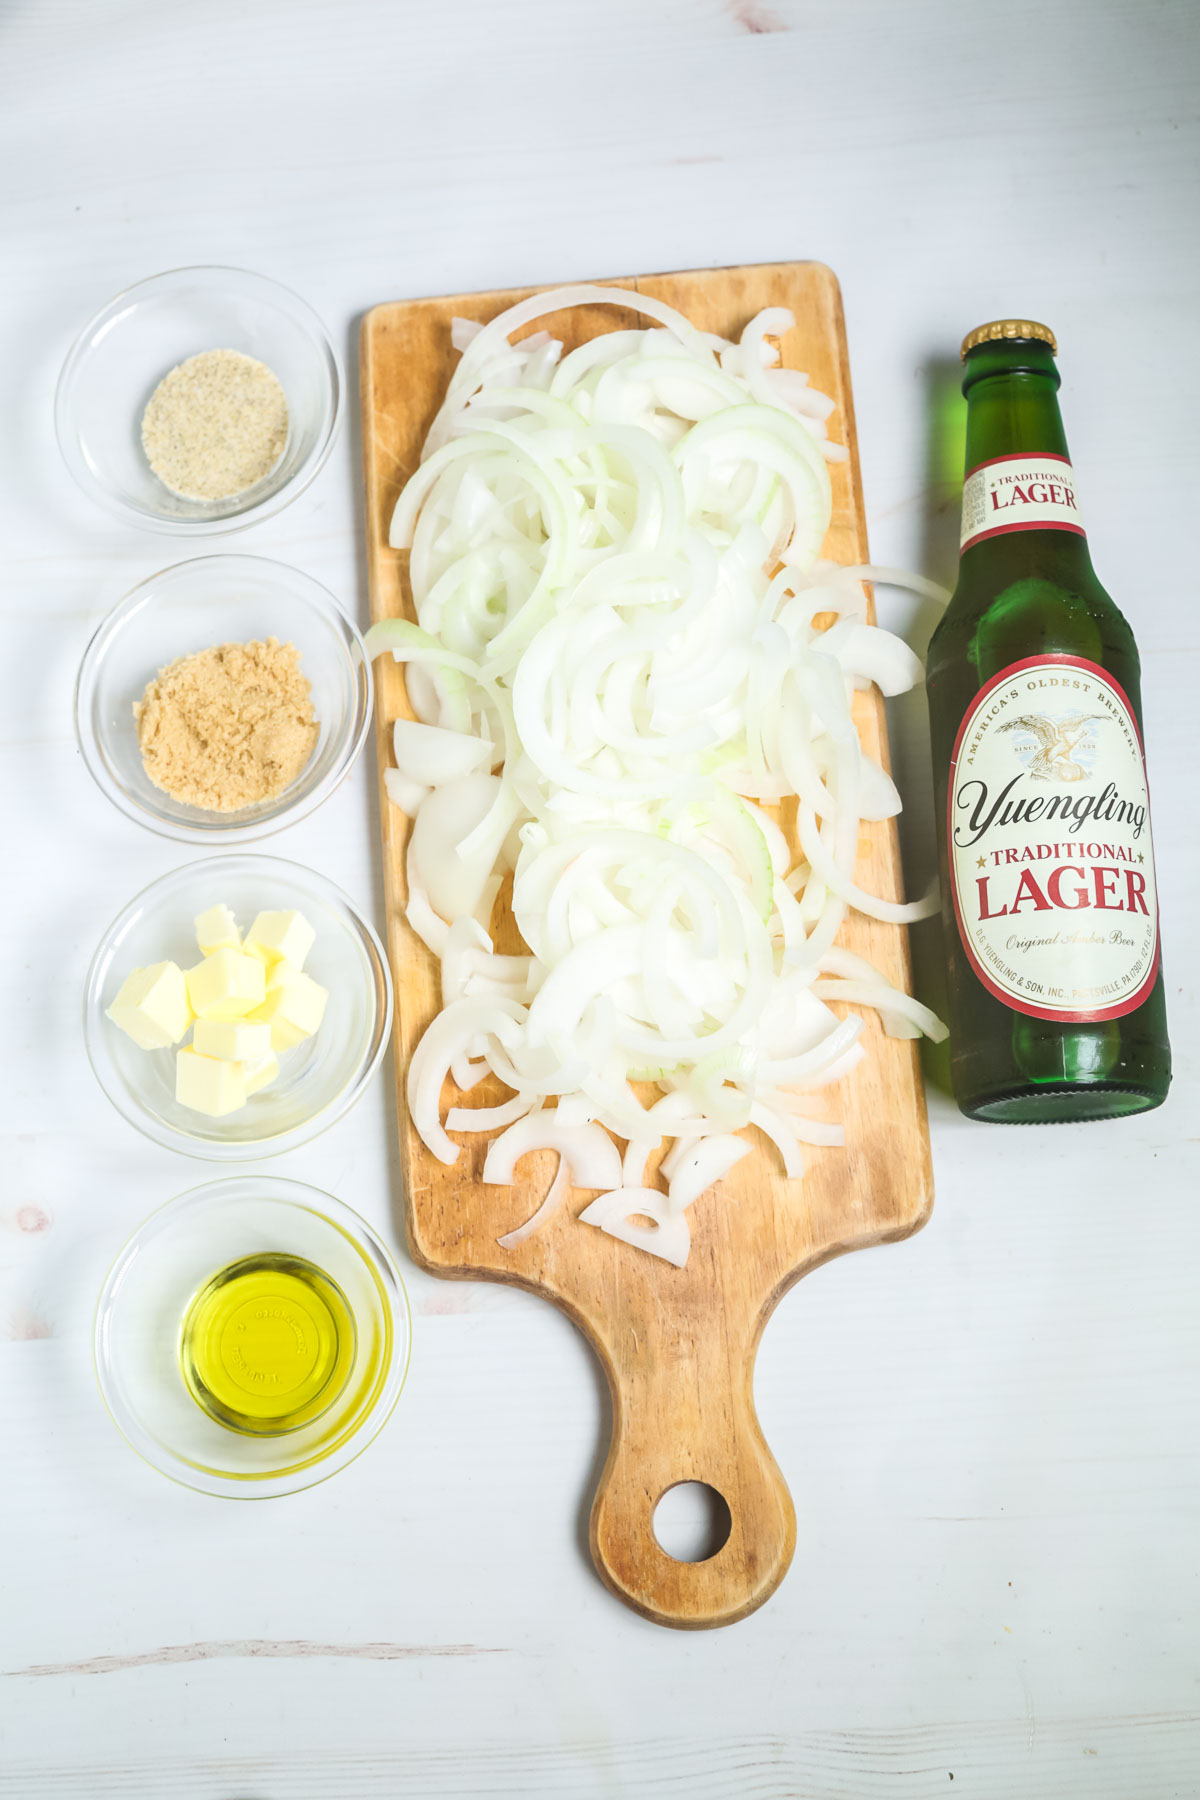 Lager beer, onions and seasonings.